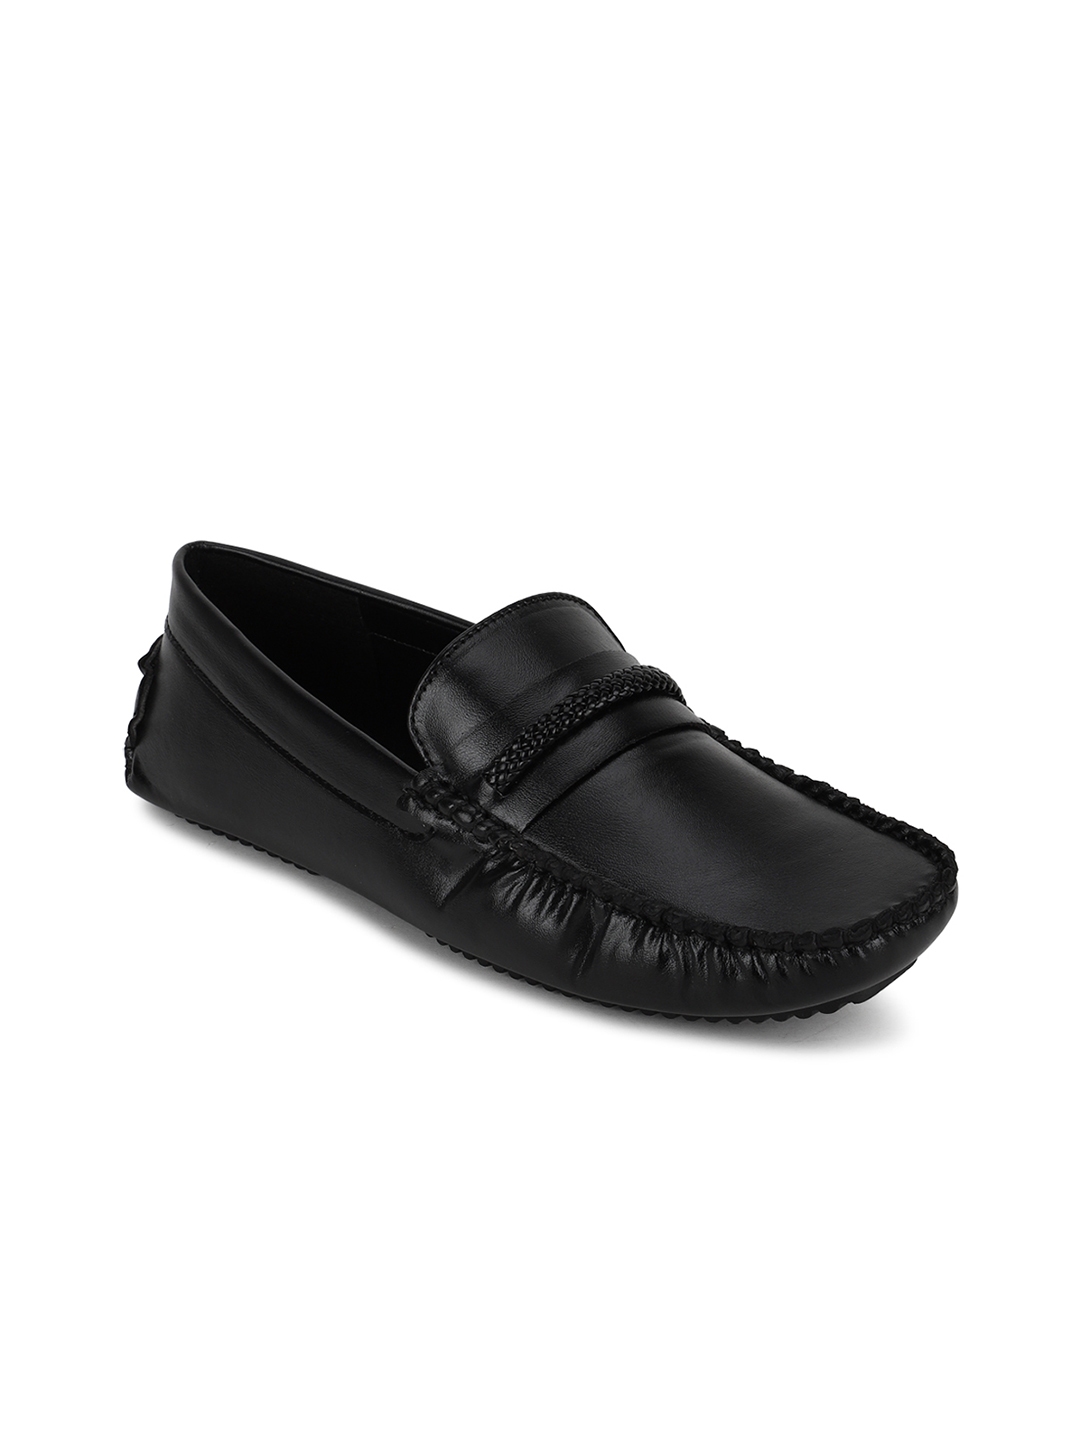 Buy Peter England Men Black Solid Formal Loafers - Formal Shoes for Men ...